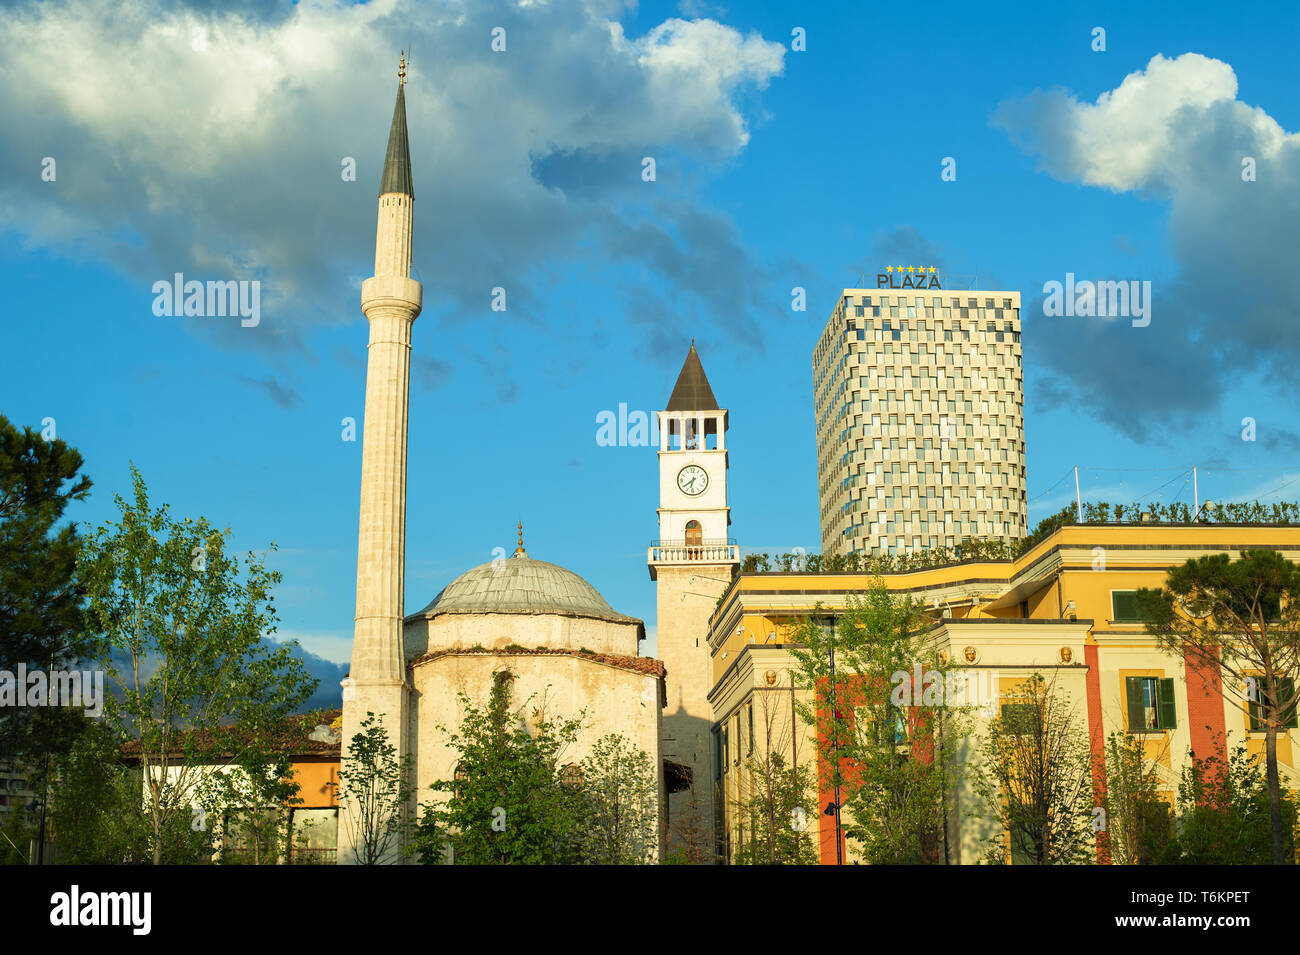 Recentemente ricostruita city central Piazza Skanderbeg, cittadini a piedi la zona pedonale. Foto Stock